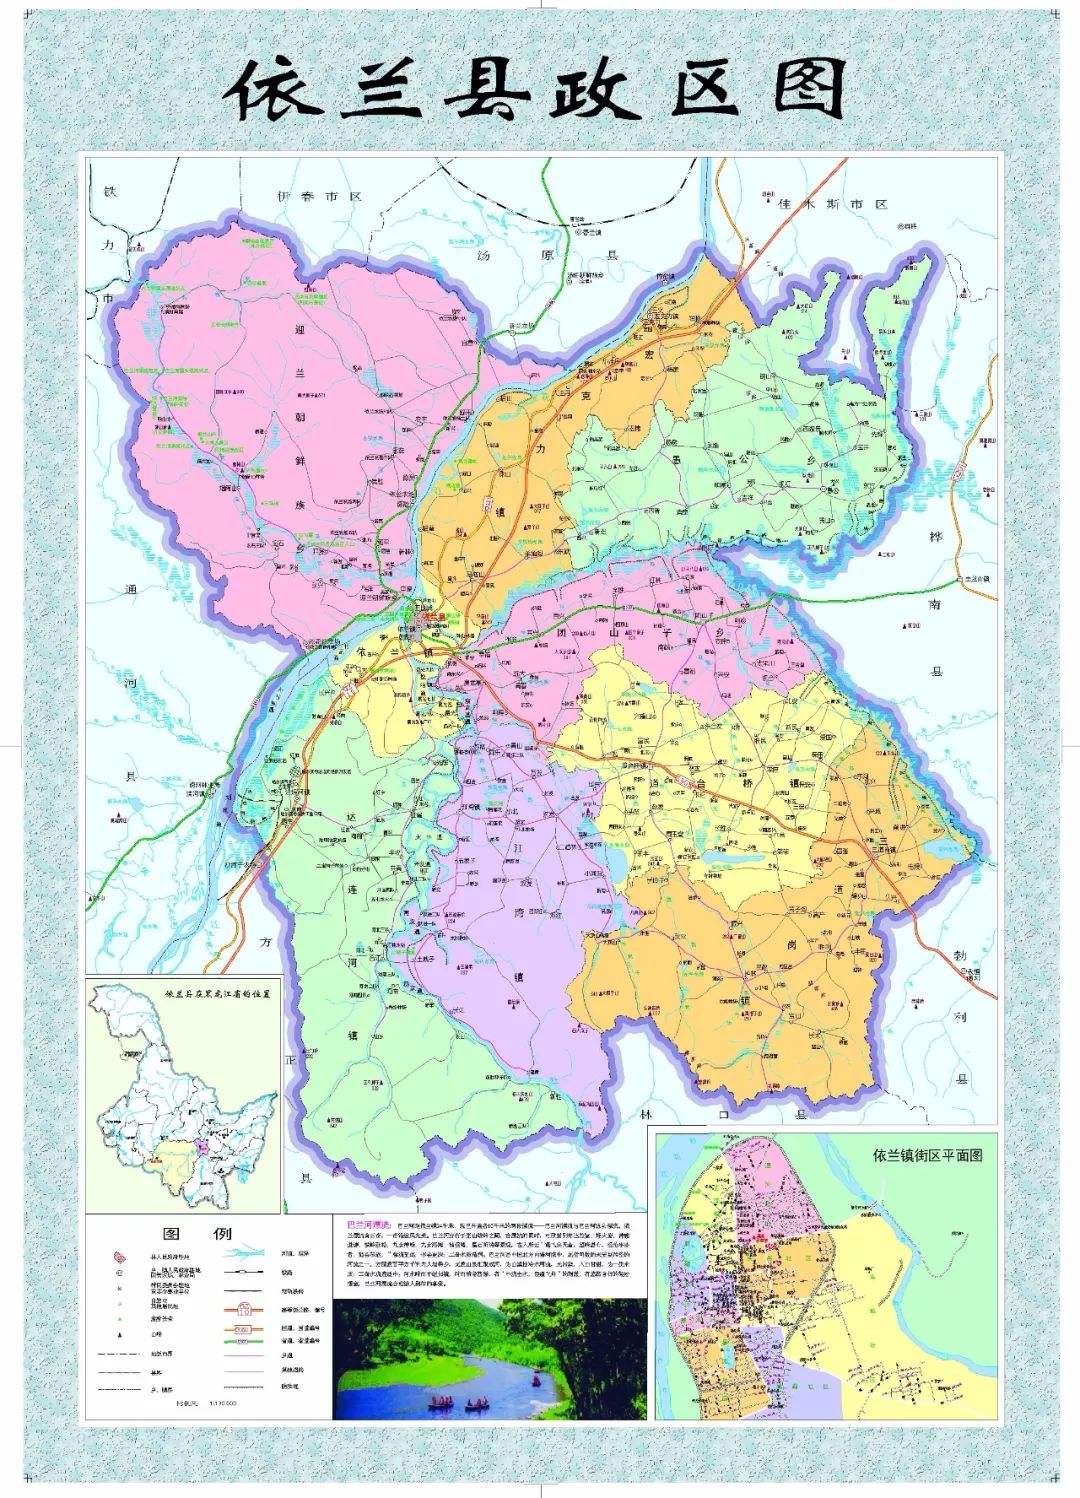 呼兰区乡镇区划地图图片